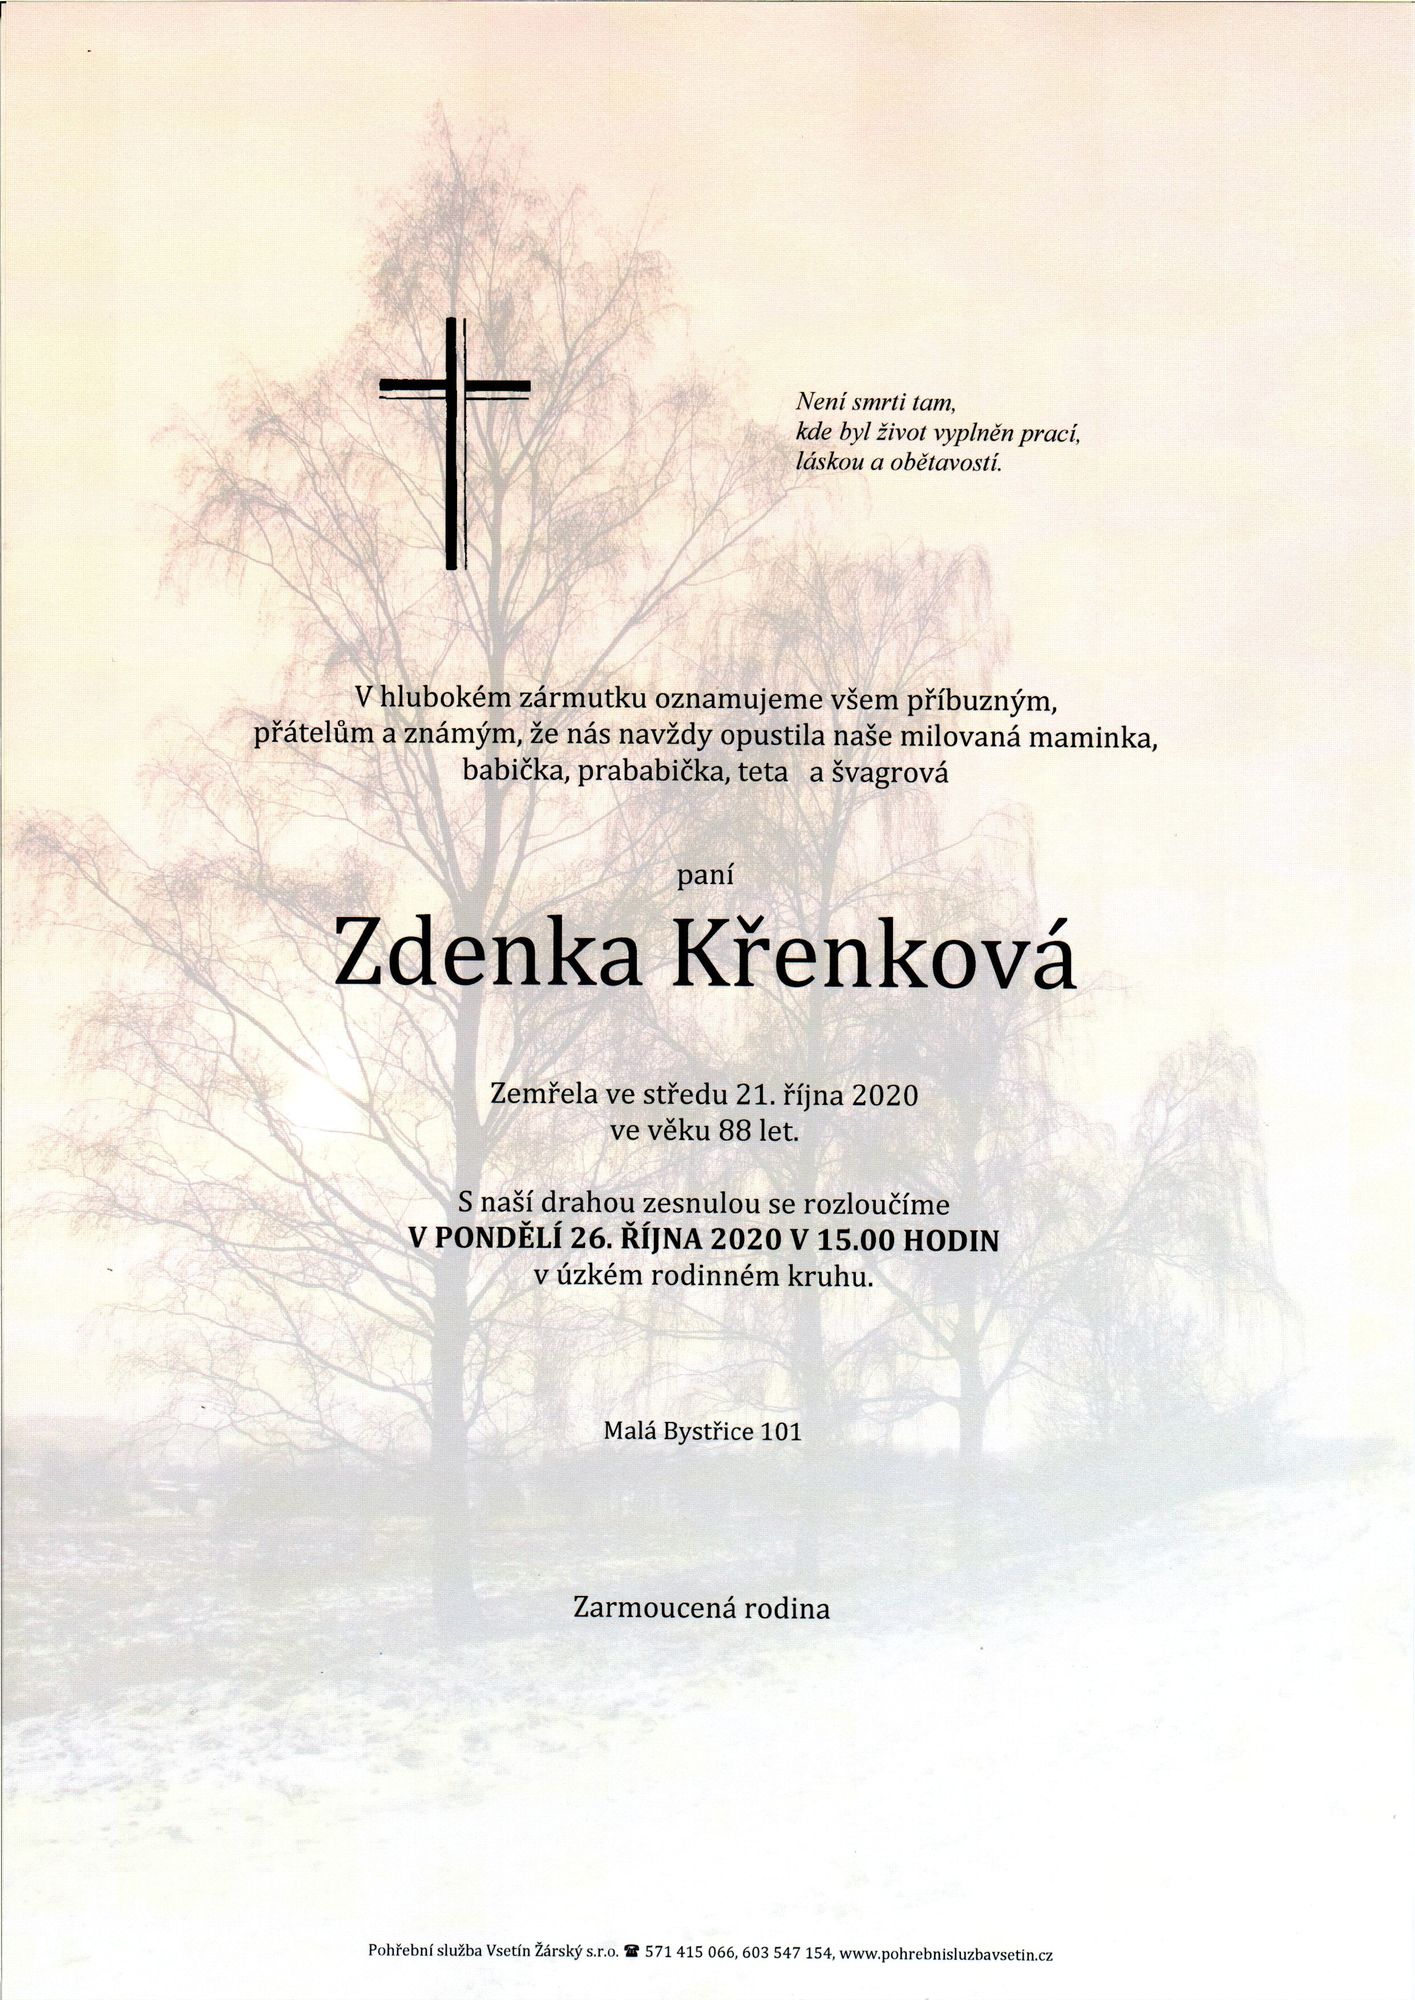 Zdenka Křenková